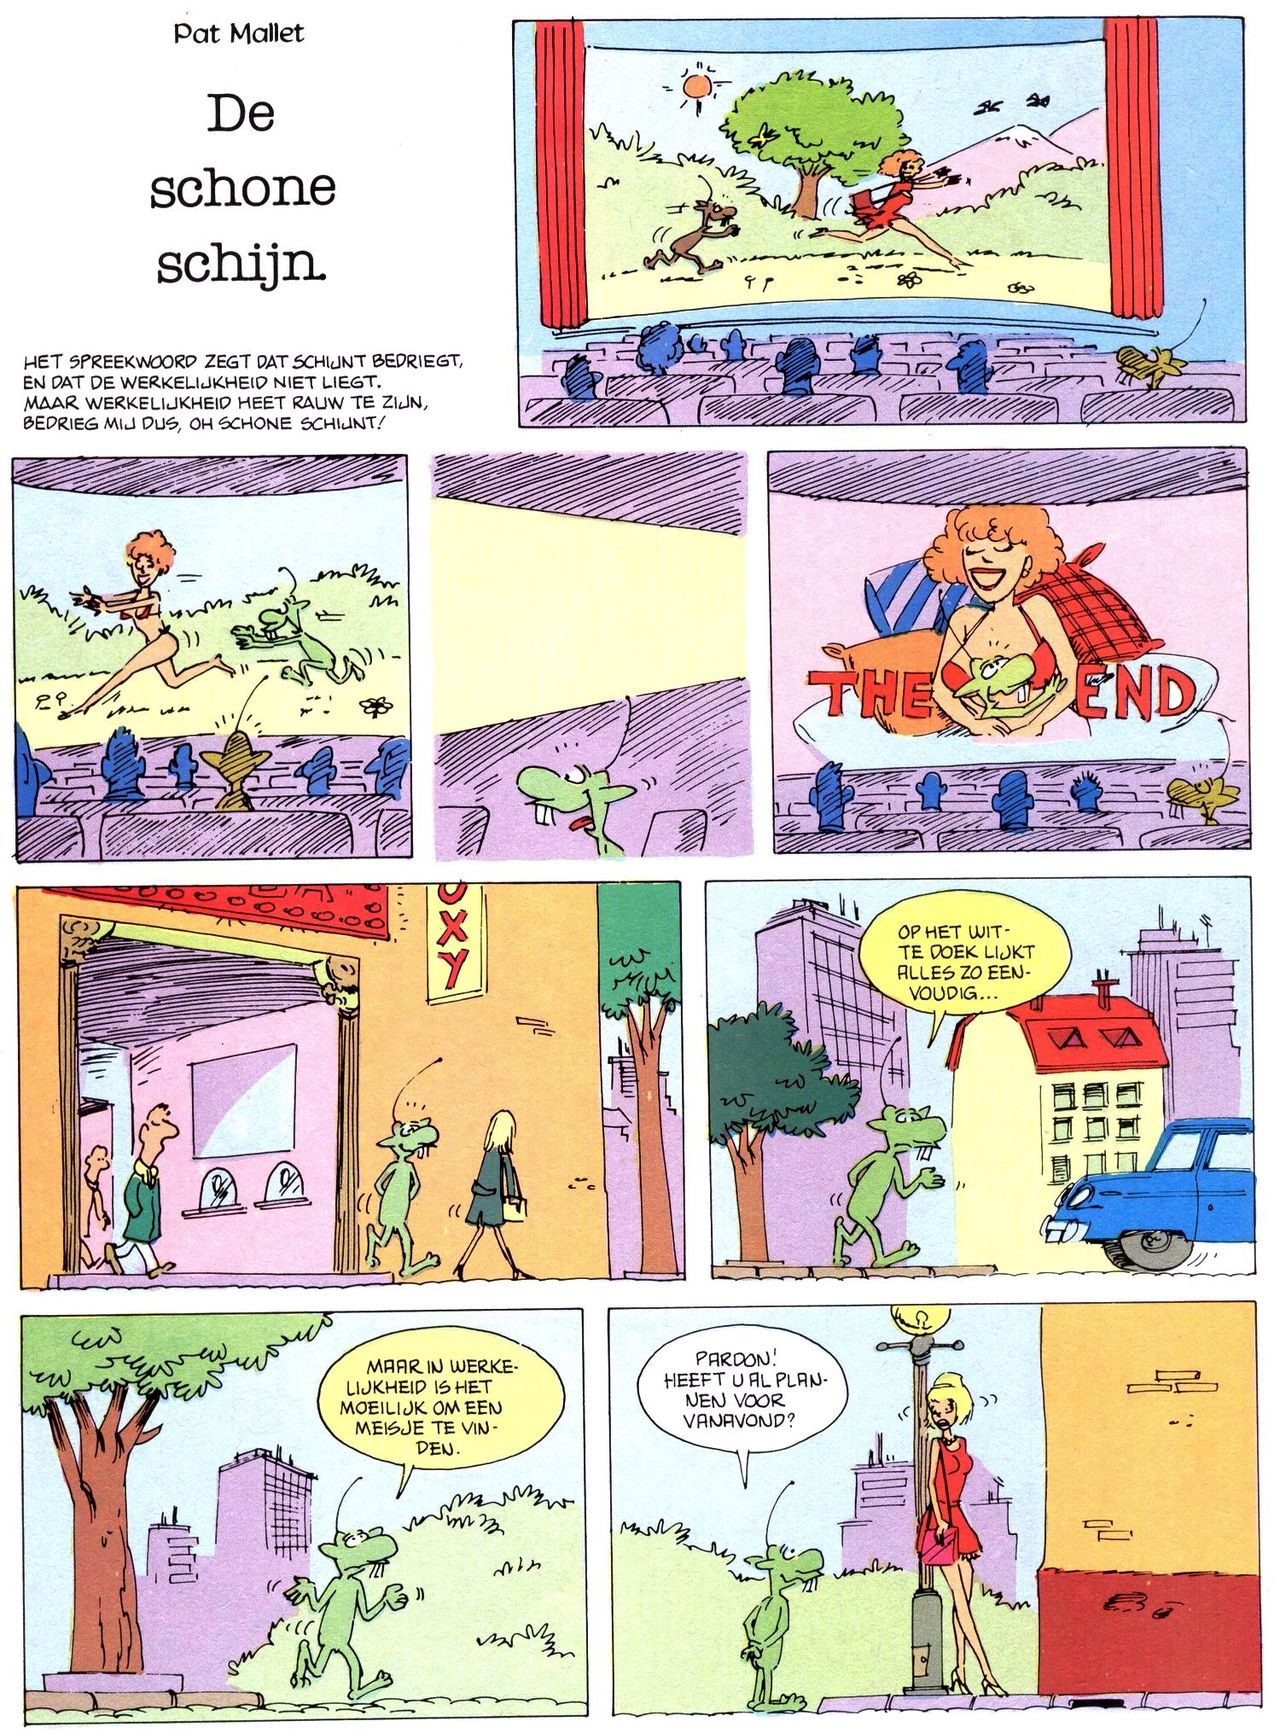 Het Is Groen En Het.. - 02 - Verboden Op Het Gras Te Lopen (Dutch) Een oude humoristische serie van Pat Mallet 15